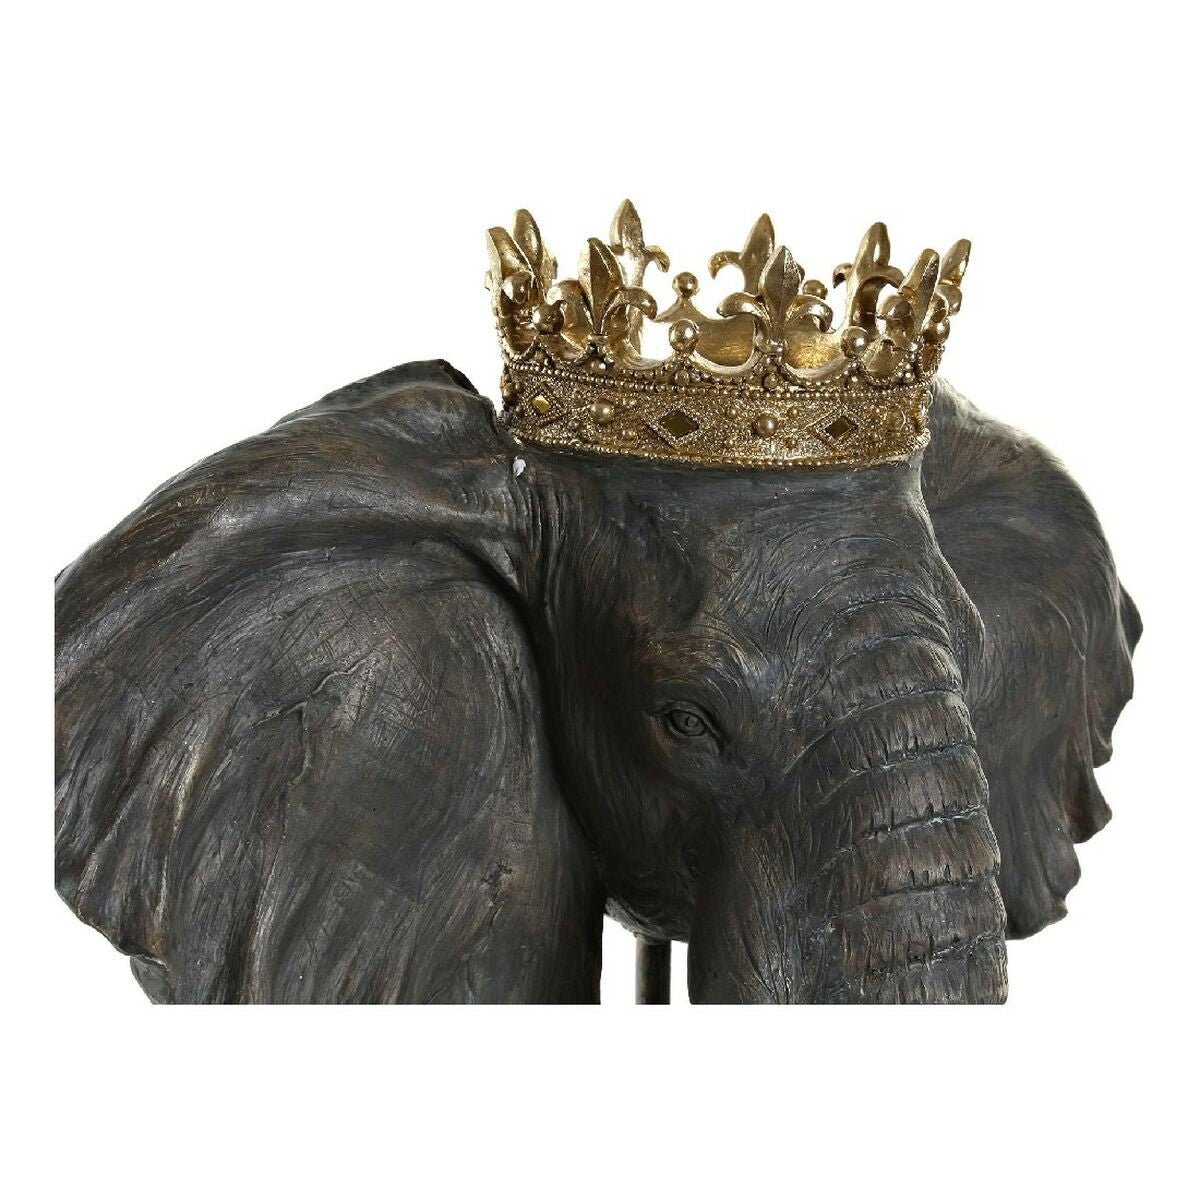 Sort Elefant konge 49 x 26,5 x 57 cm)